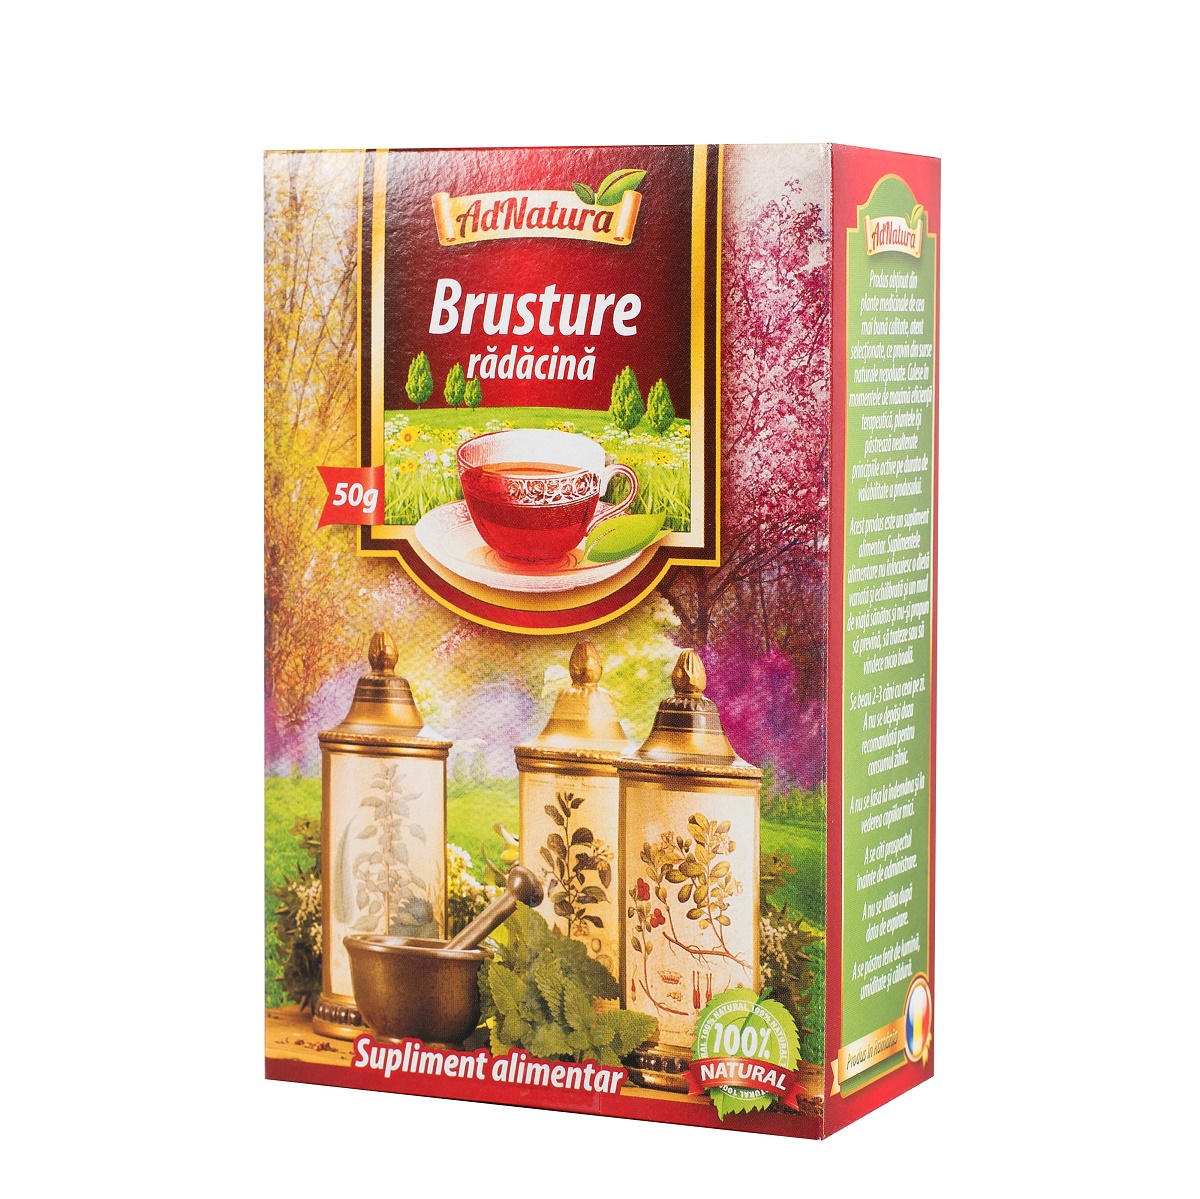 Ceai Brusture 50g (ad Natura)